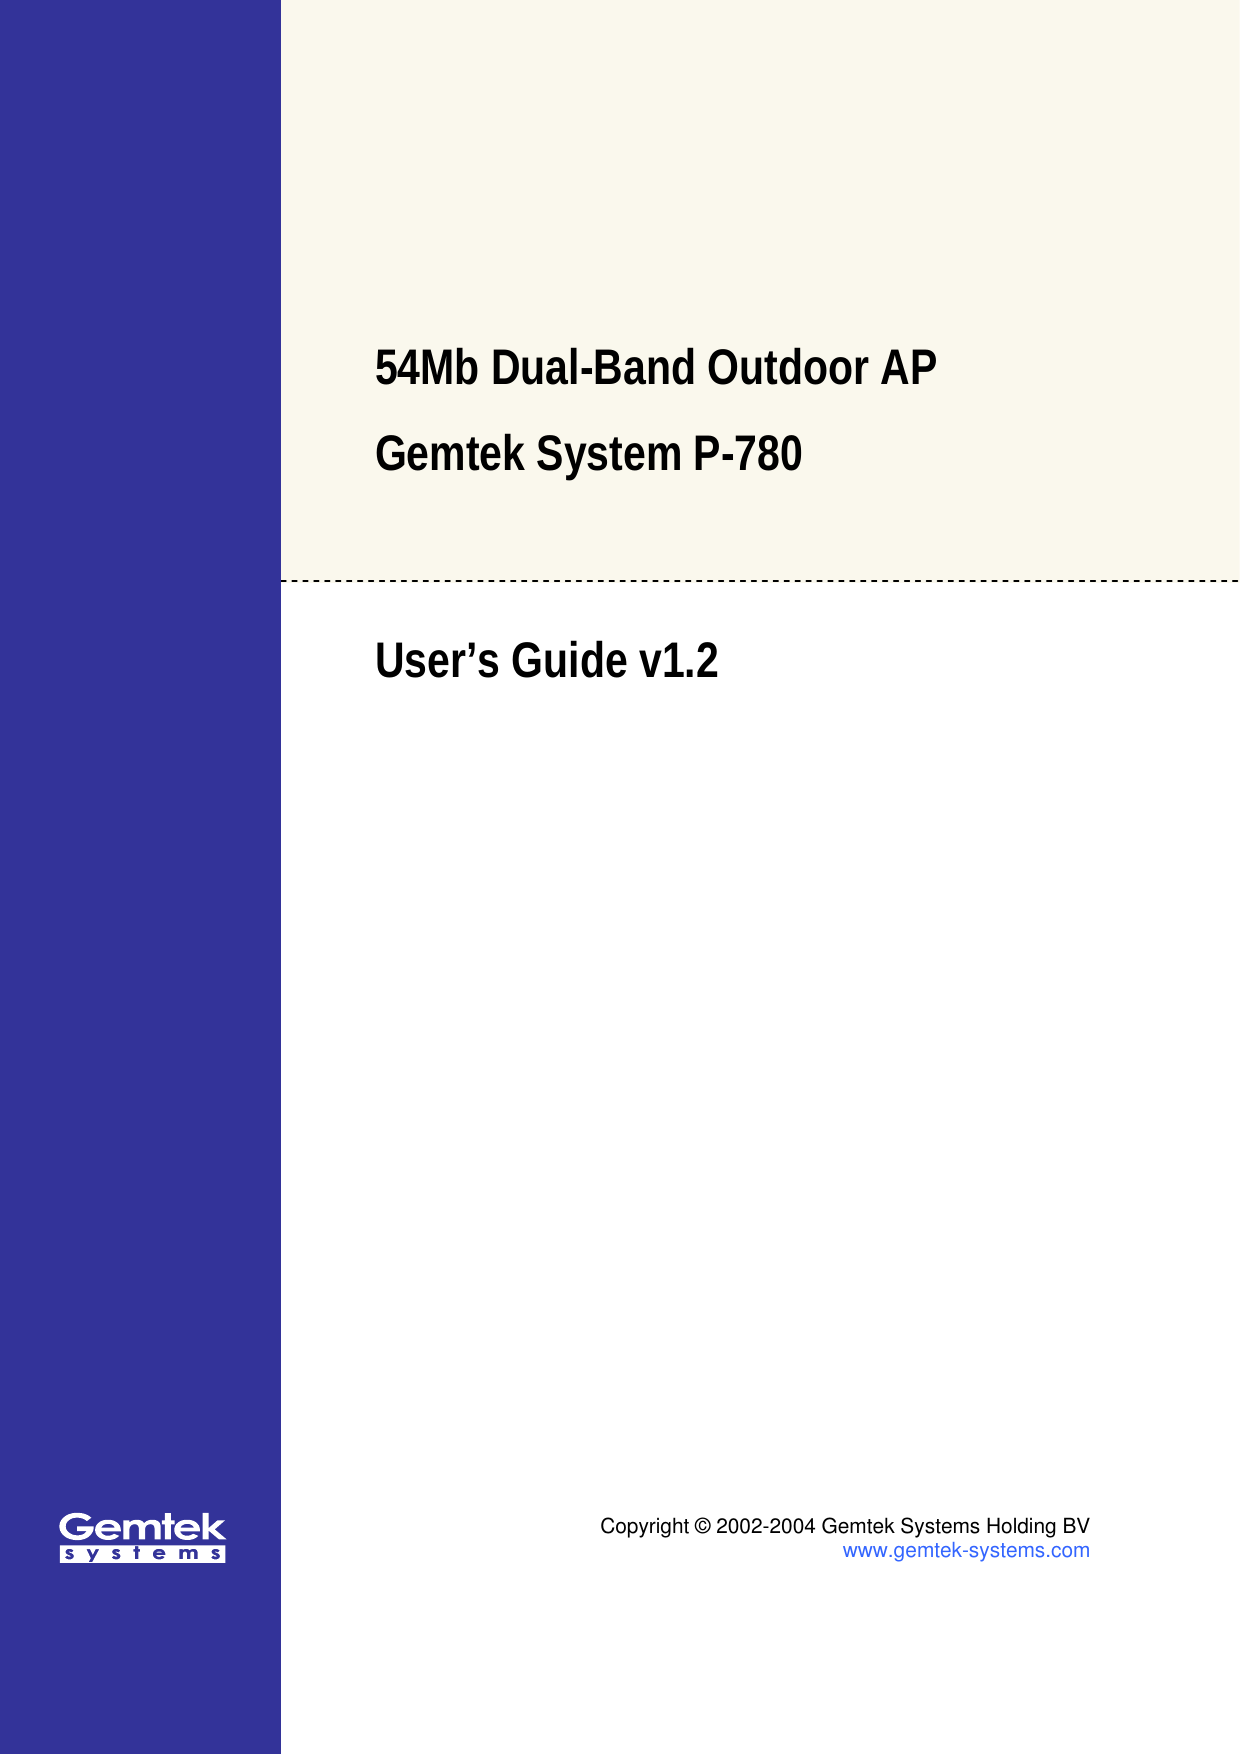   54Mb Dual-Band Outdoor AP  Gemtek System P-780  User’s Guide v1.2    Copyright © 2002-2004 Gemtek Systems Holding BV www.gemtek-systems.com